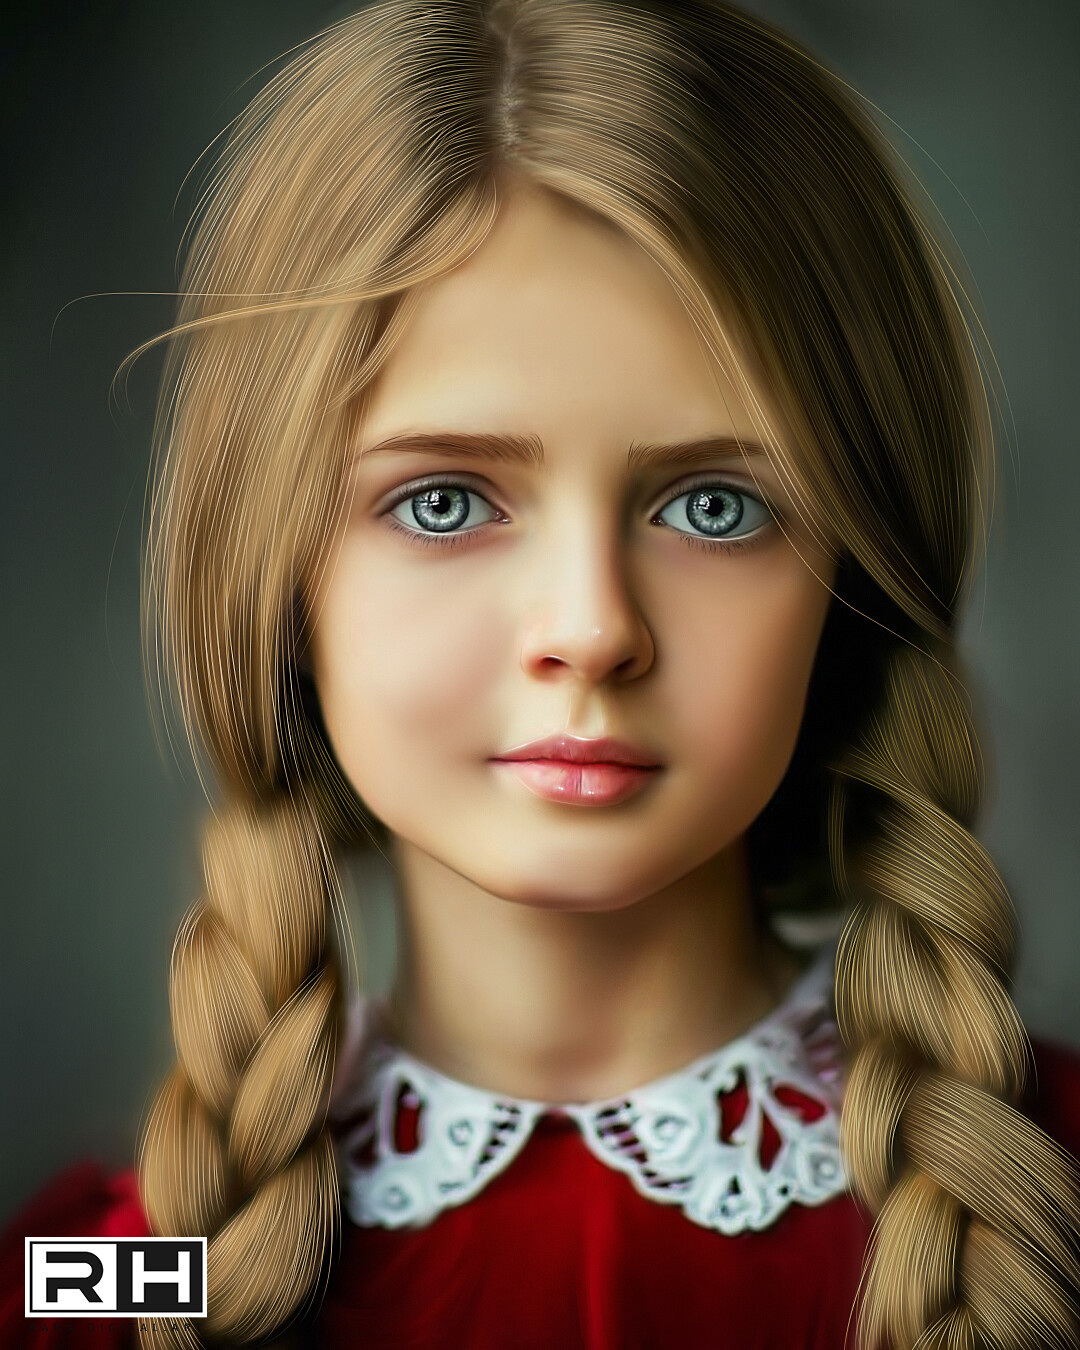 Девочка с голубыми глазами